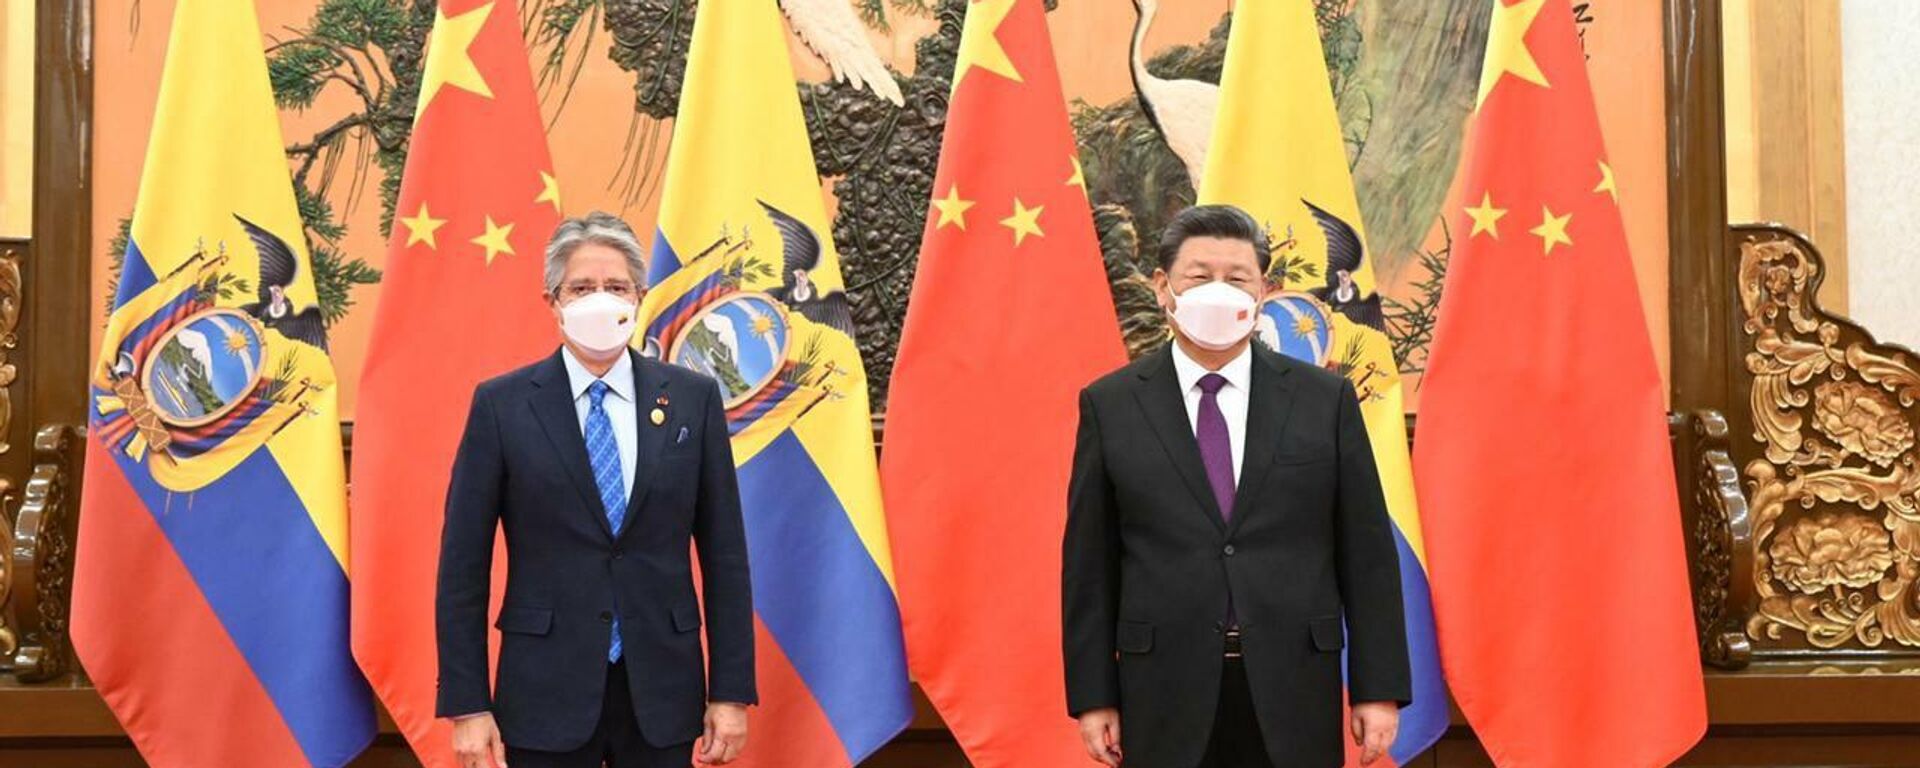 El presidente de Ecuador, Guillermo Lasso, con su homólogo chino, Xi Jinping - Sputnik Mundo, 1920, 05.02.2022